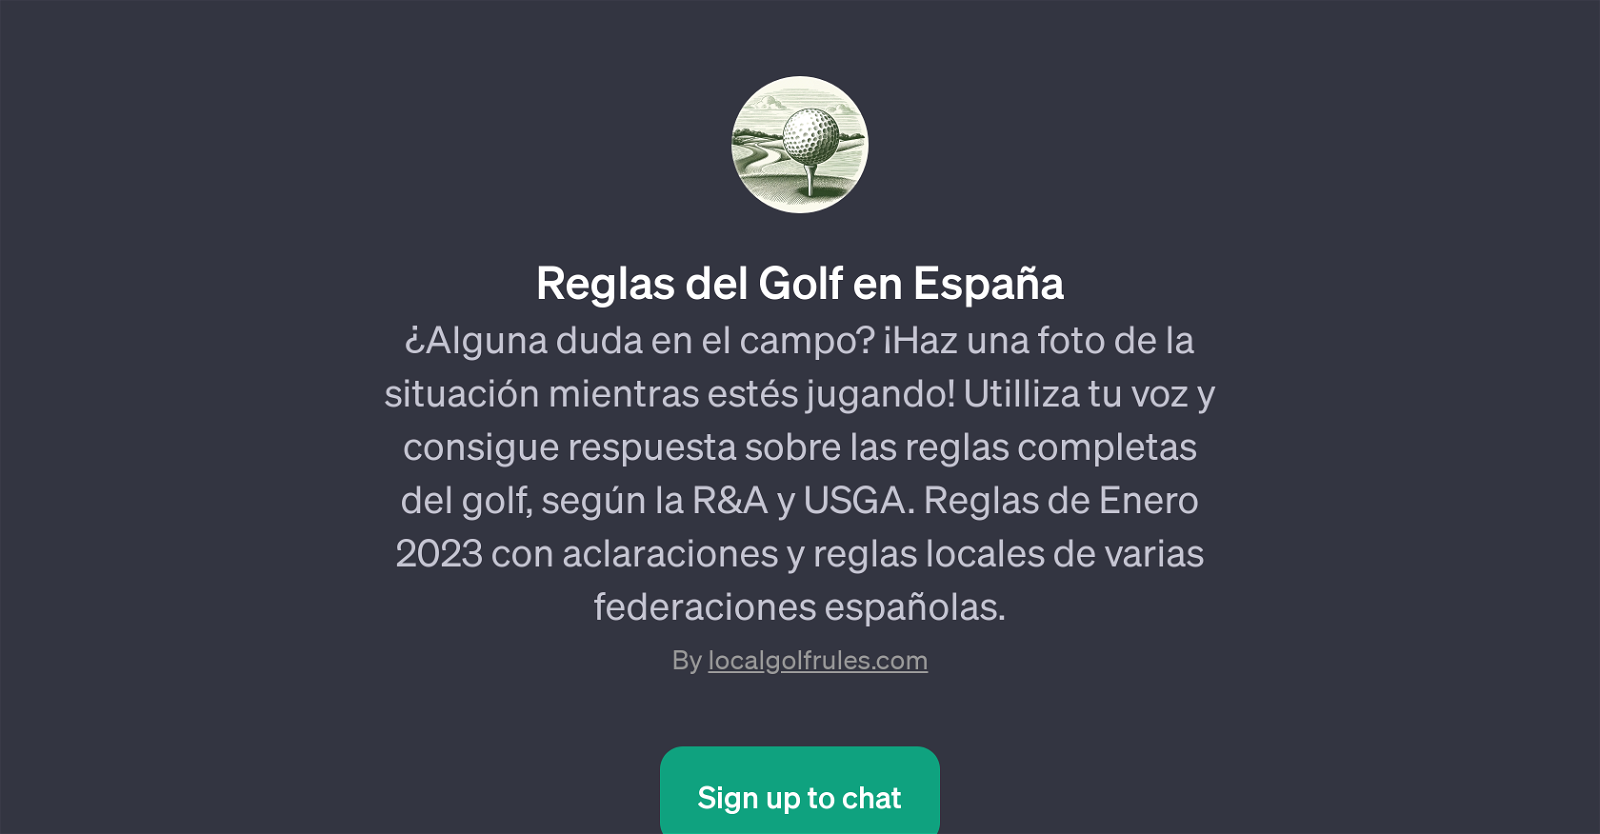 Reglas del Golf en Espaa website